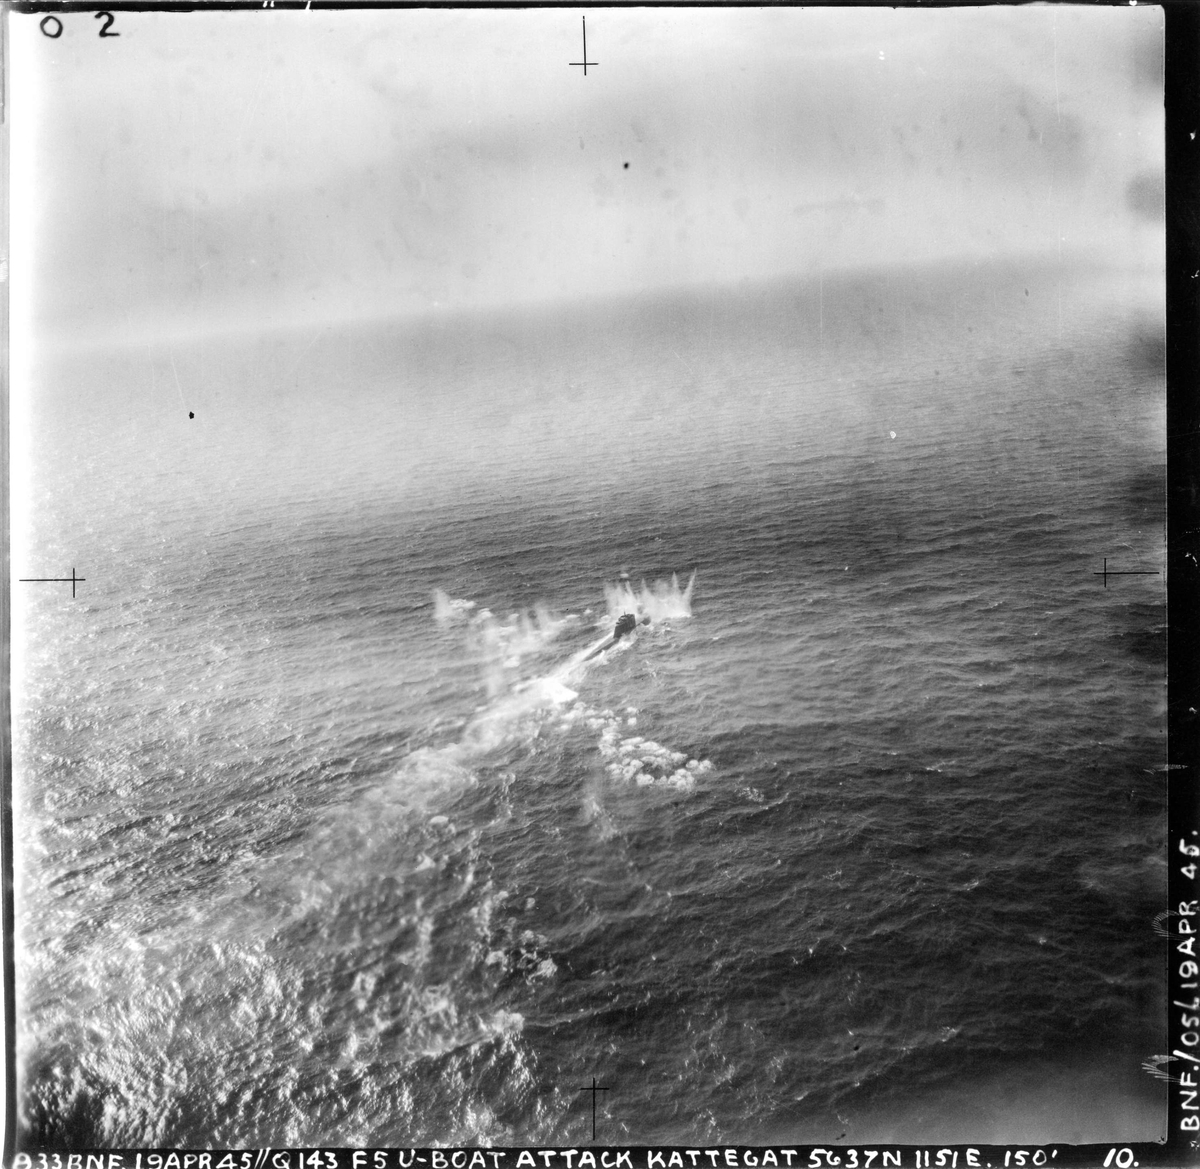 143 skvadronen angriper en ubåt i Kattegat, 19. april 1945.